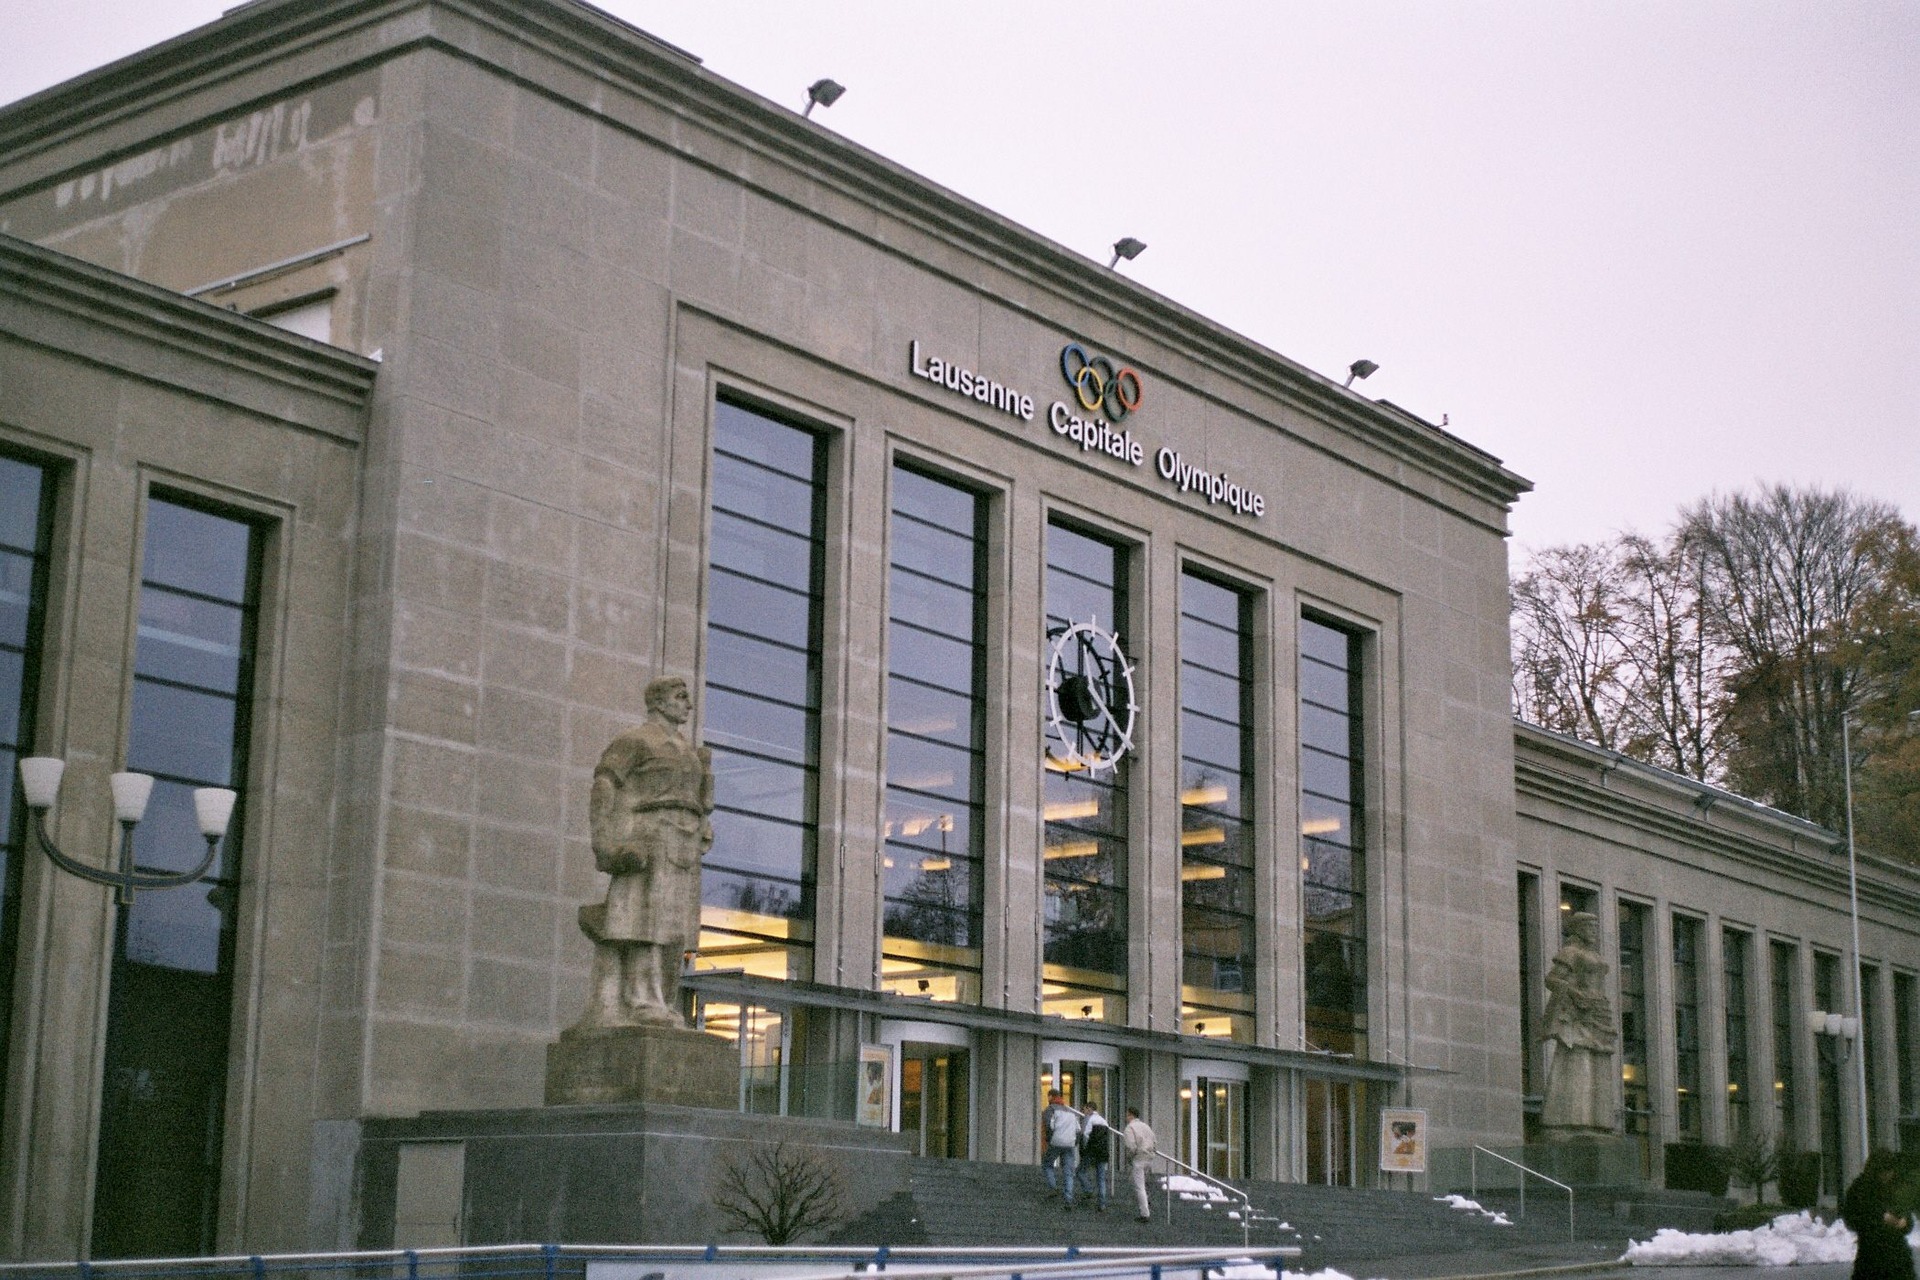 L'edificio principale del Beaulieu Conference and Exhibition Center di Losanna